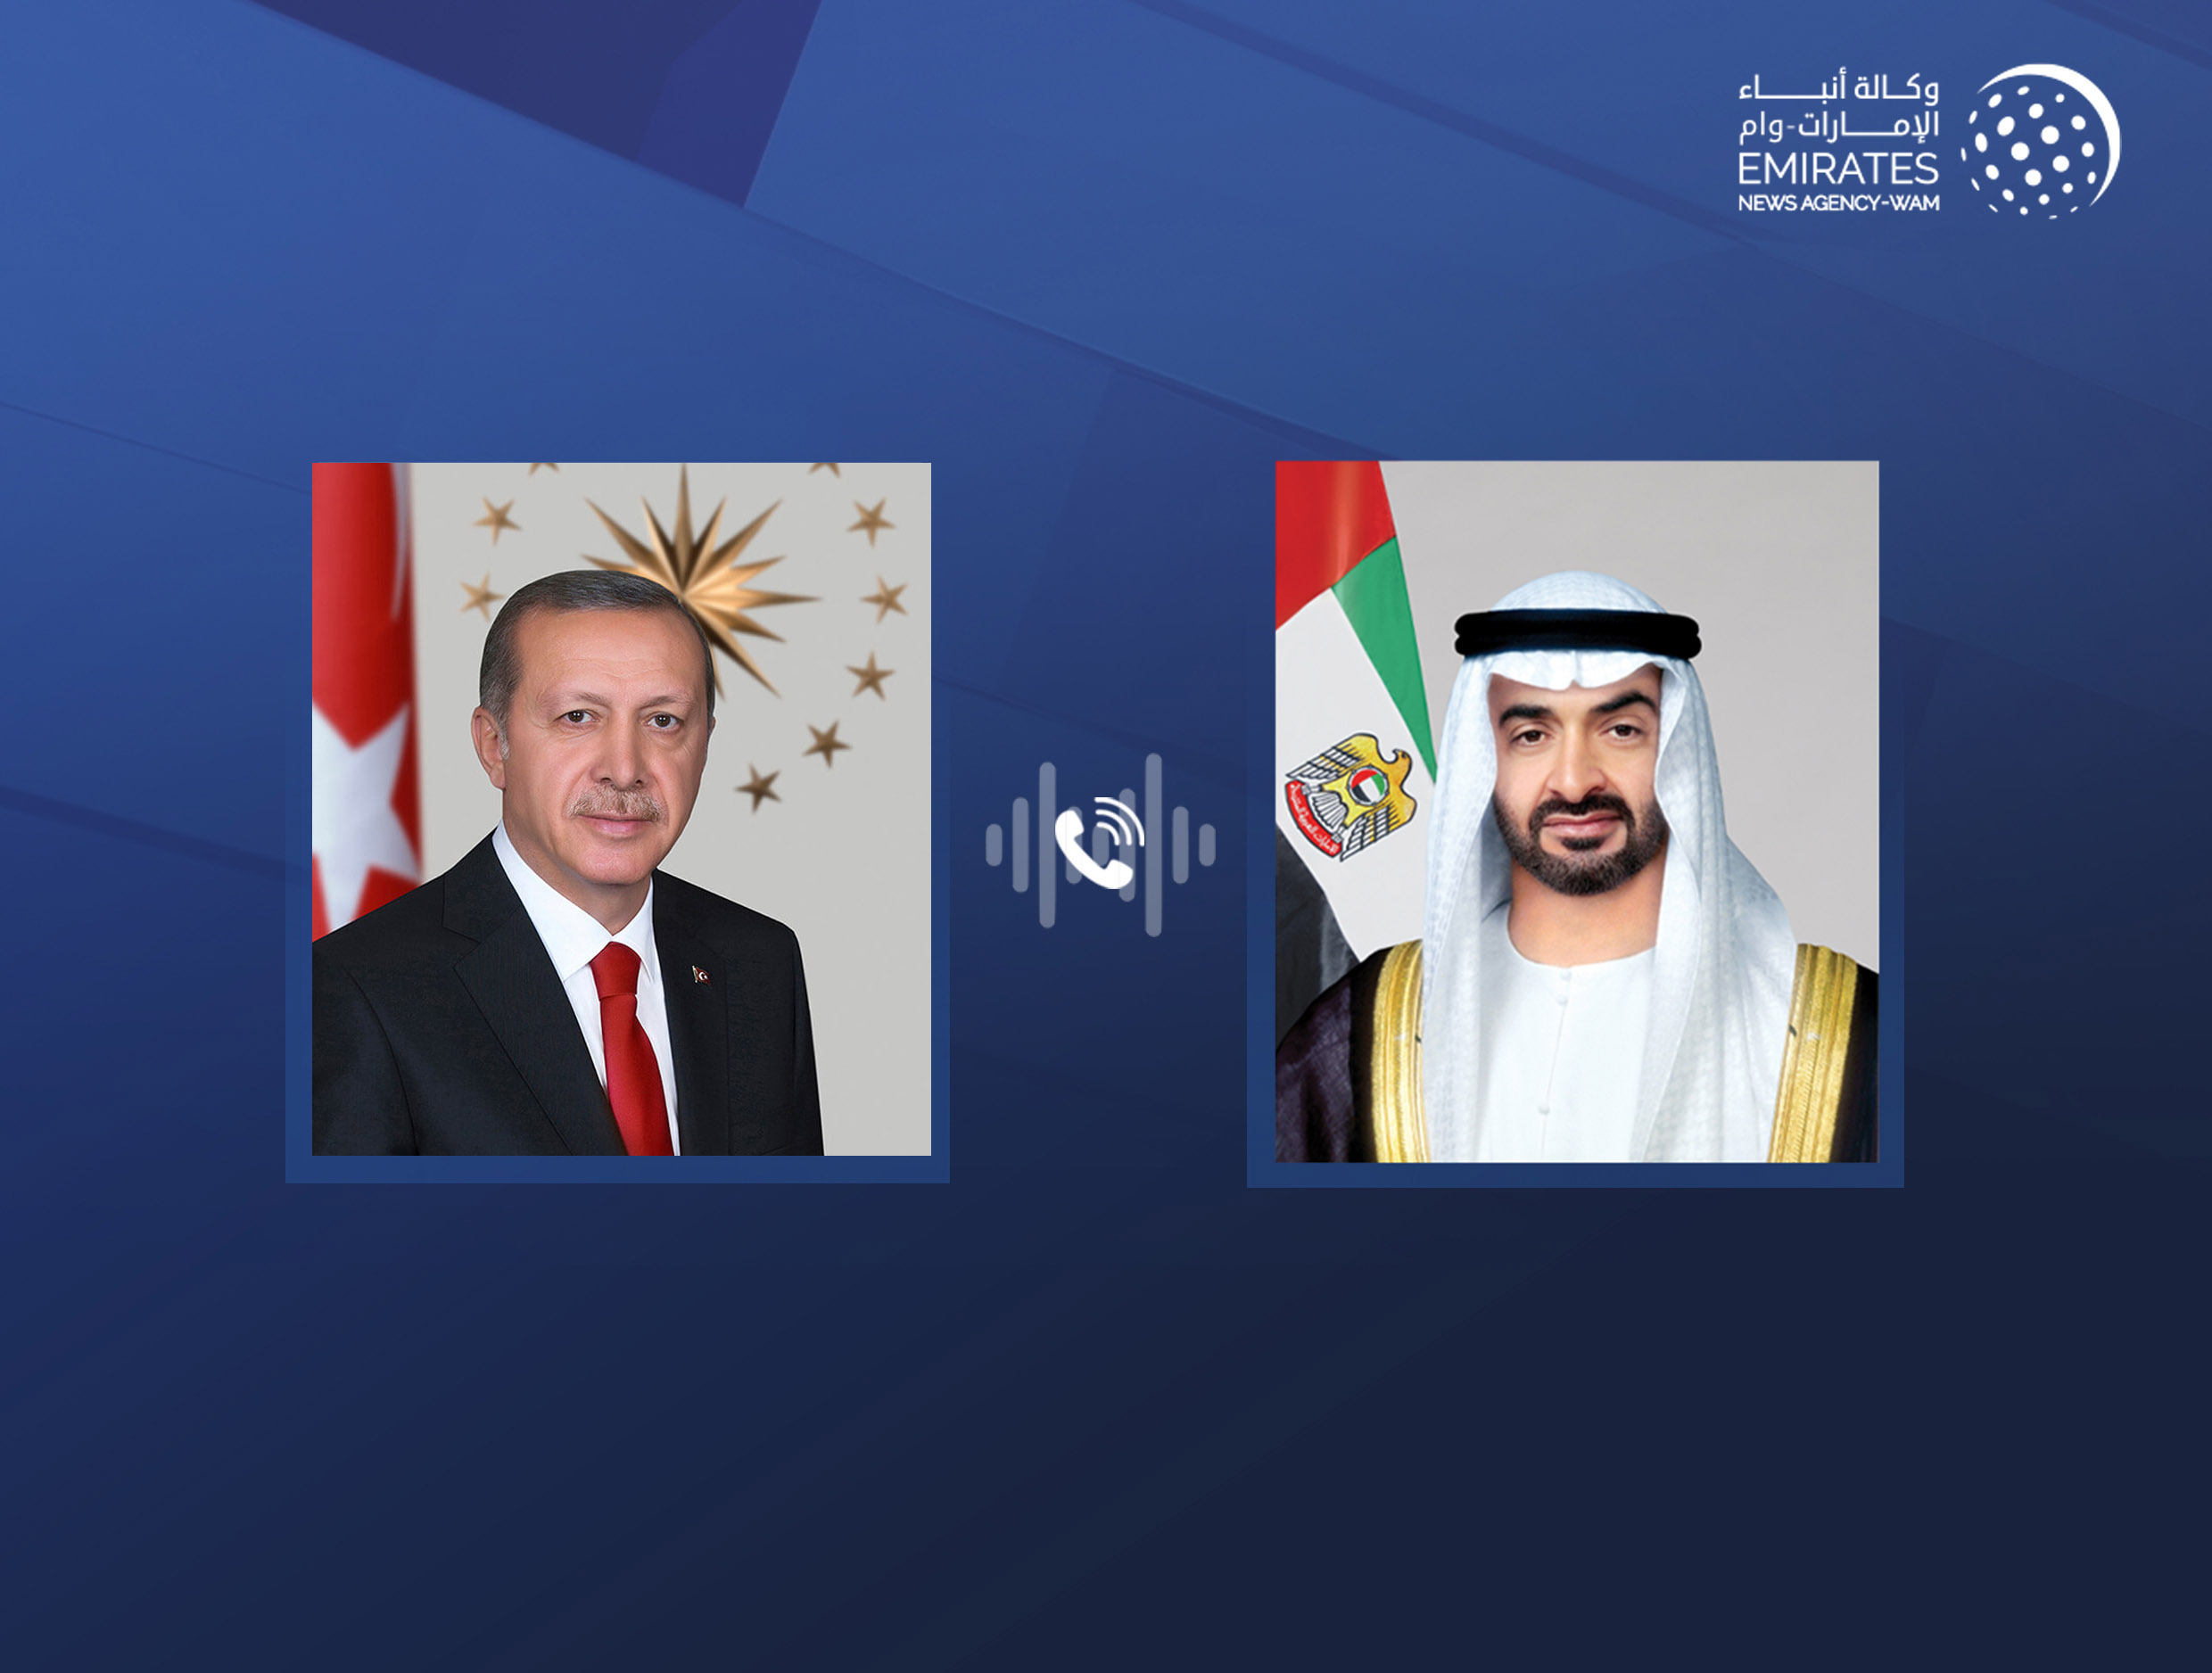 رئيس الدولة يؤكد تضامن الإمارات مع تركيا وشعبها إثر الهجوم الإرهابي الذي شهدته العاصمة أنقرة